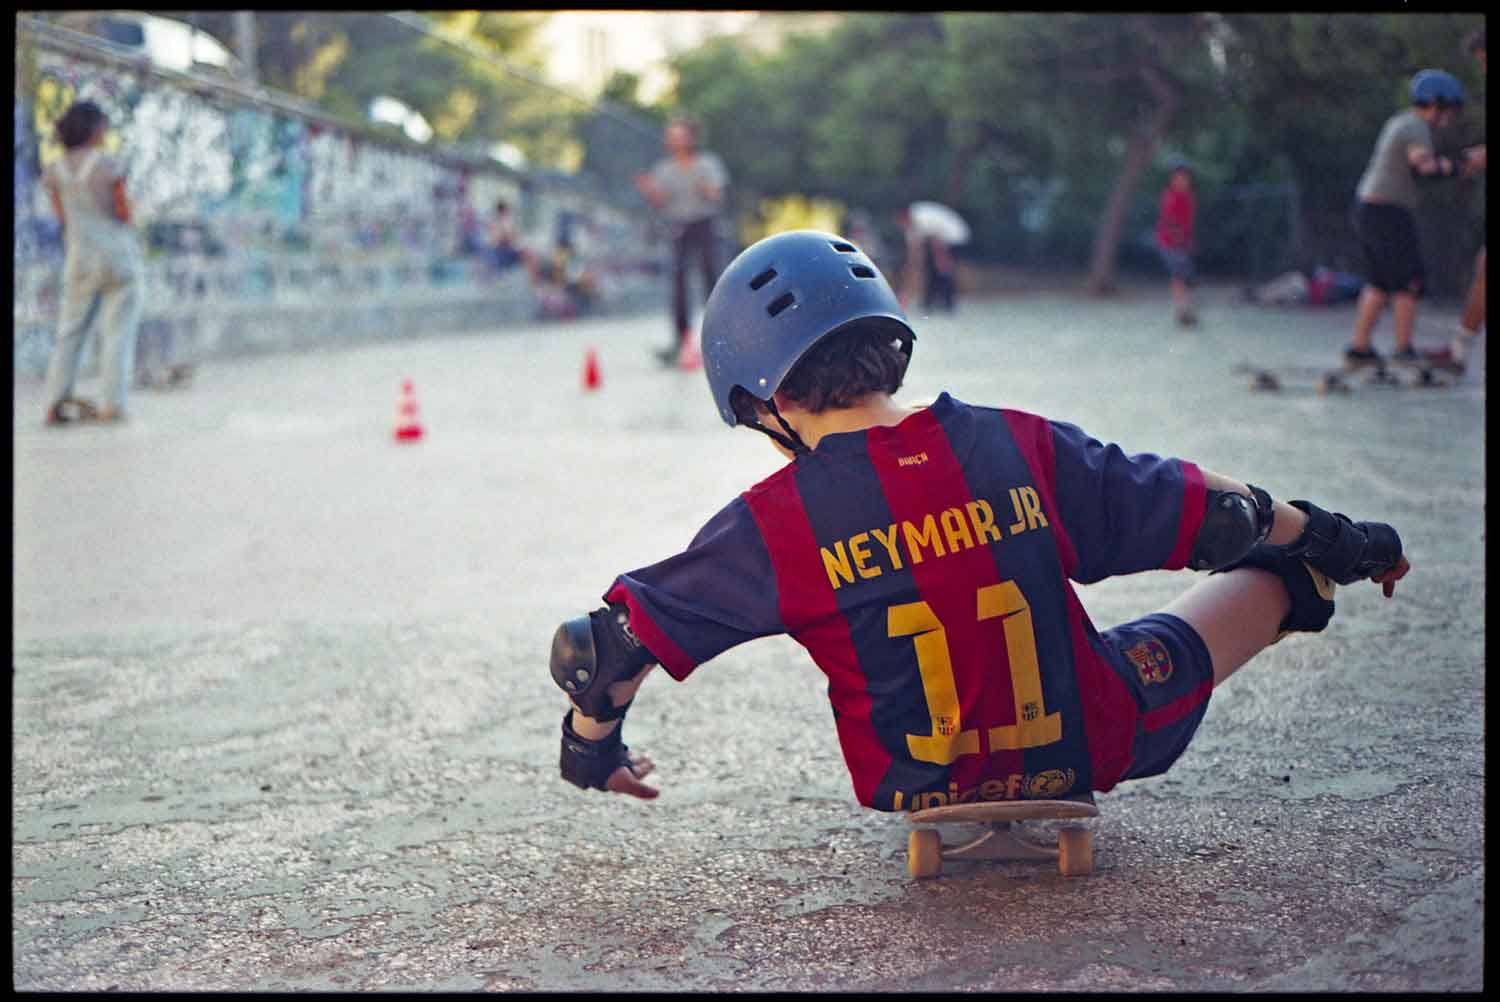 refugee child on a skateboard